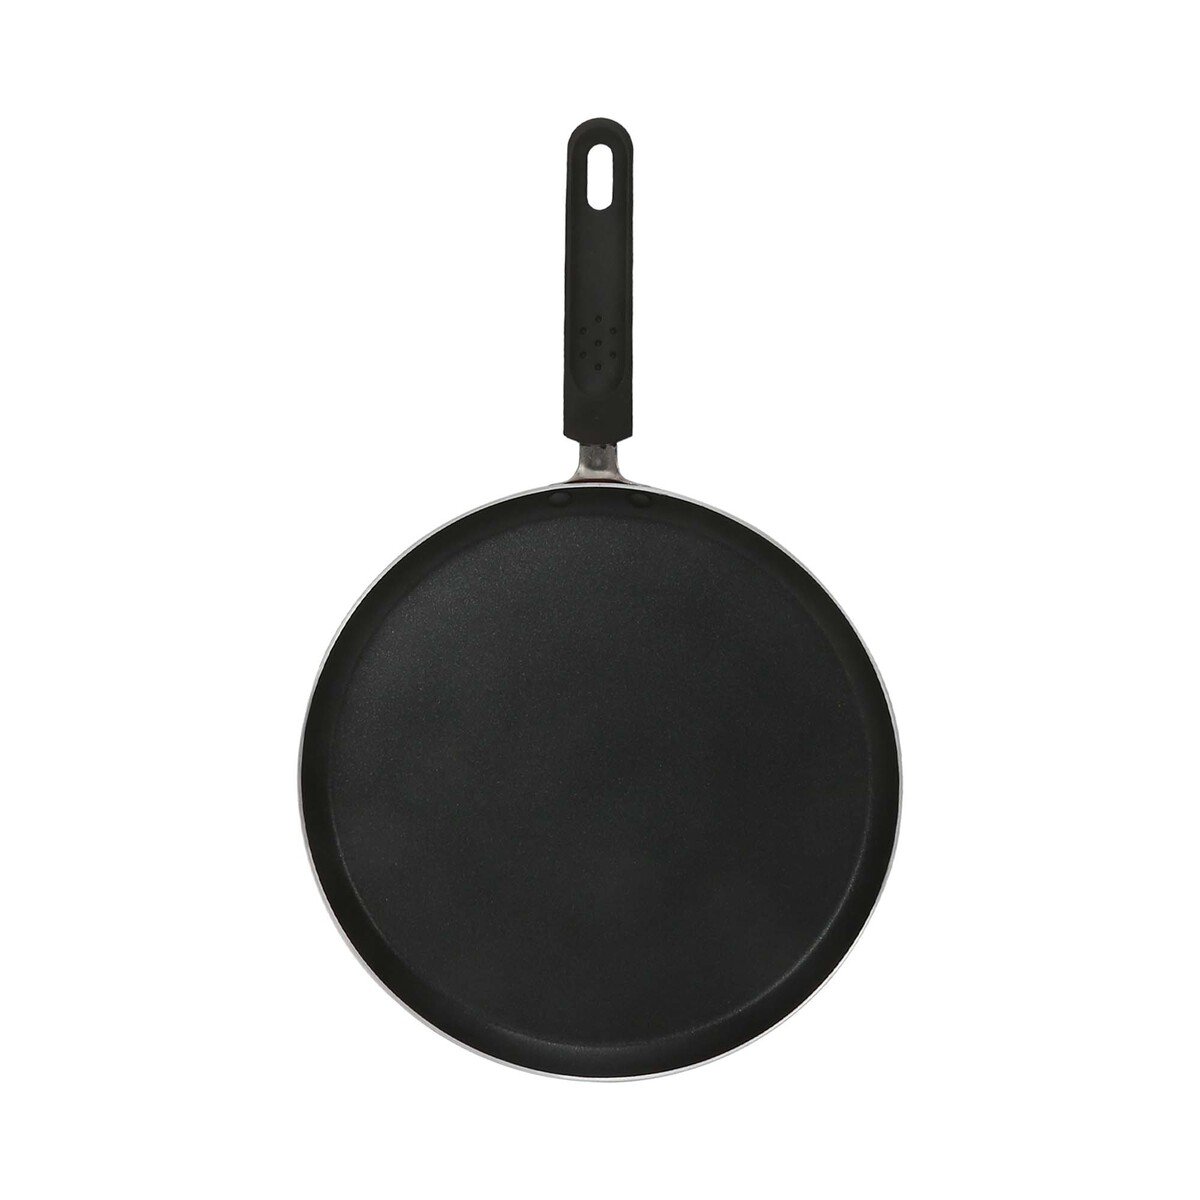 Chefline Aluminium Crepe Pan, 28 cm, INDPO